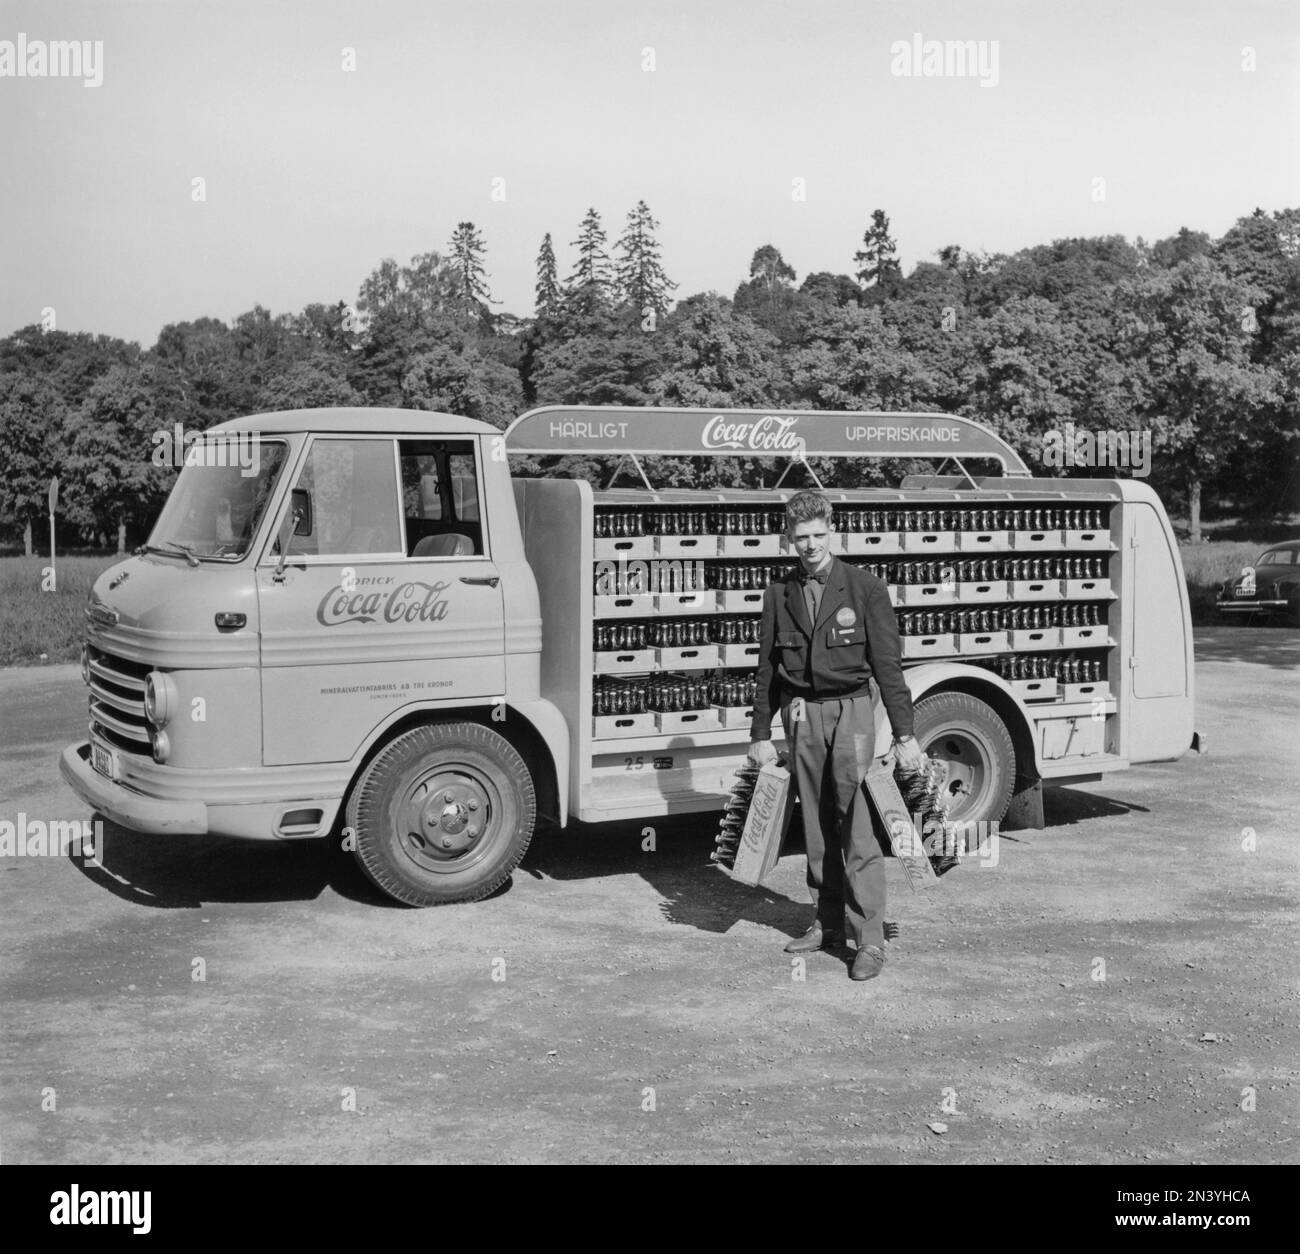 Coca-Cola en 1950s. En 1 janvier 1953, Coca-Cola a été autorisé pour la première fois à être fabriqué et vendu en Suède, avant d'être limité à la vente en Suède puisque le contenu de Coca-Cola comprenait des substances interdites comme l'acide phosphorique et la caféine. Un camion de distribution précoce chargé de bouteilles Coca-Cola. Un camion Volvo modèle L42 modifié et peint en rouge pour l'usage exclusif sur les camions Coca-Cola. Coca-Cola a été tôt avec avoir la publicité sur leurs véhicules. Suède 1956 Banque D'Images